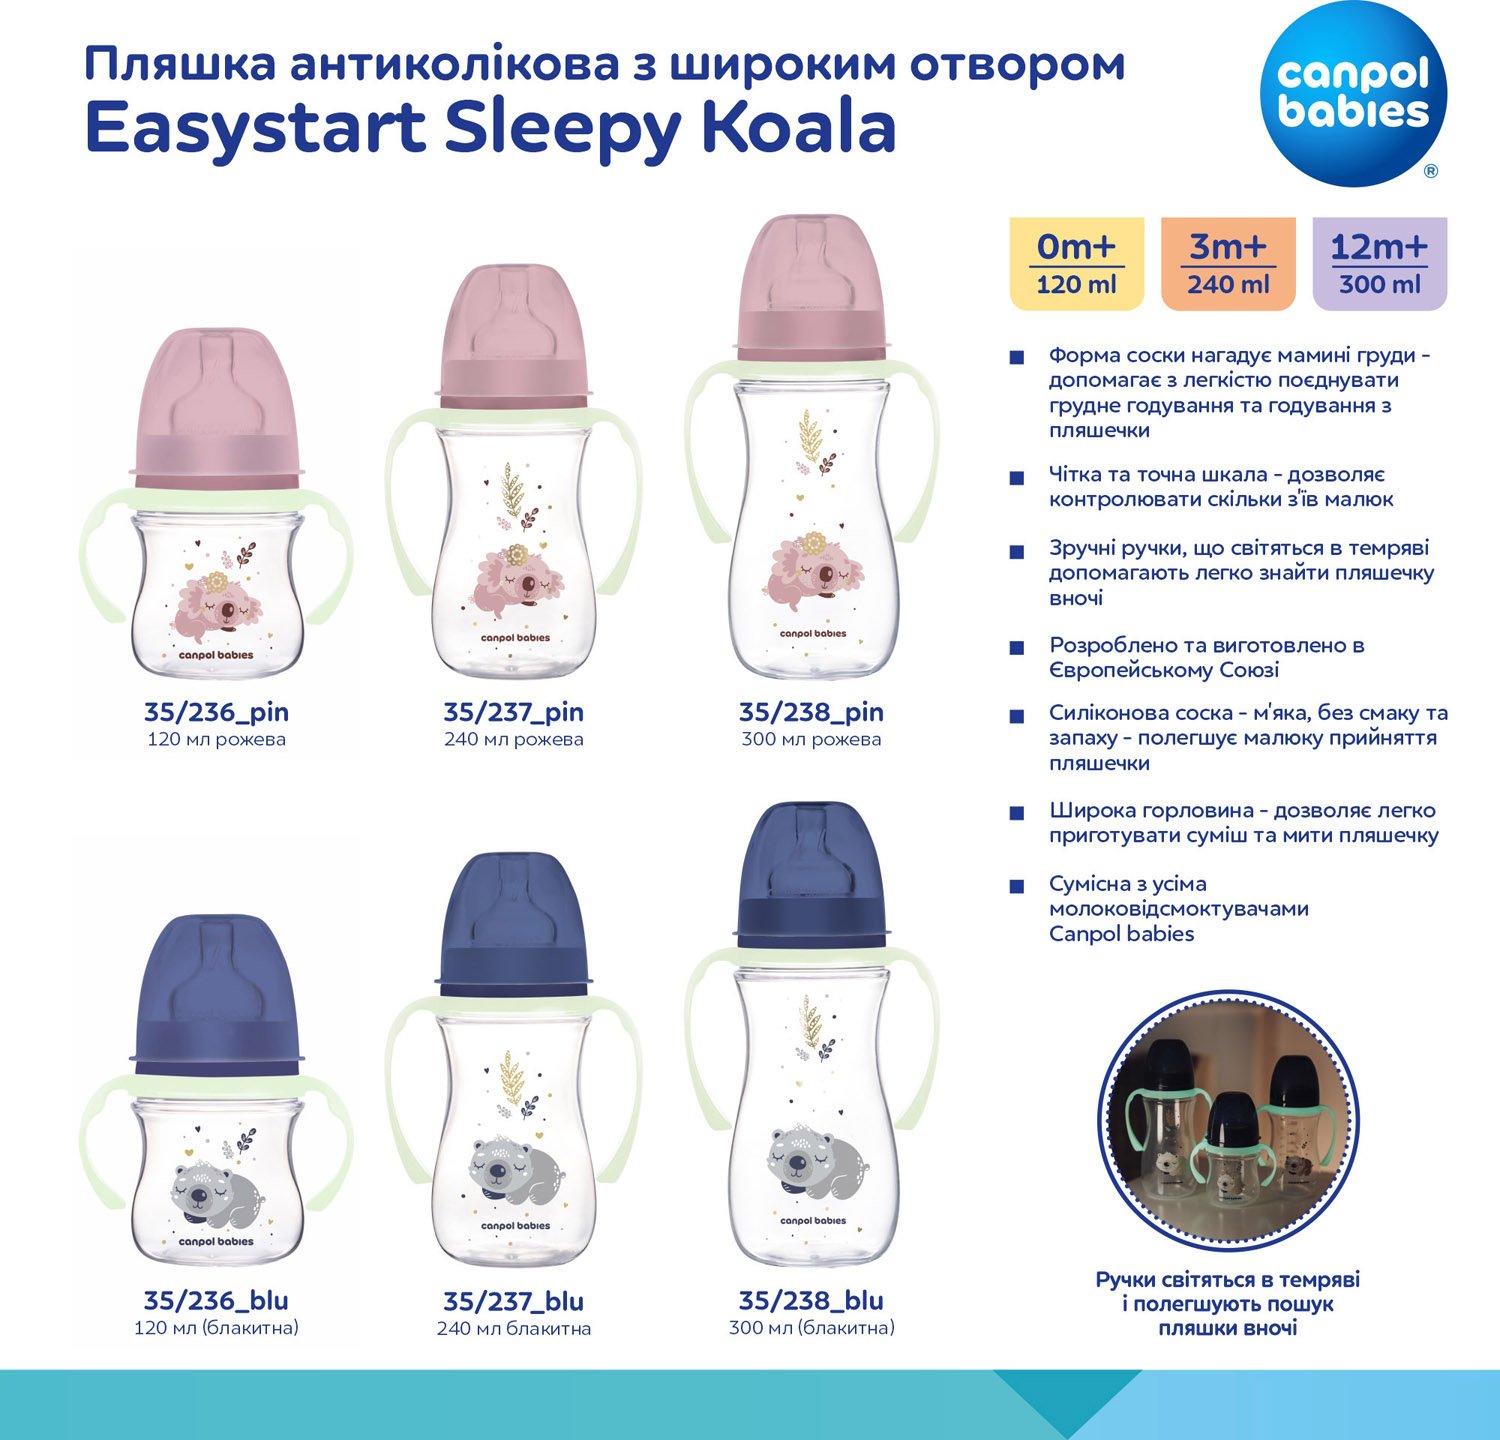 Бутылочка для кормления Canpol babies Easystart Sleepy Koala, антиколиковая, 240 мл, розовая (35/237_pin) - фото 11